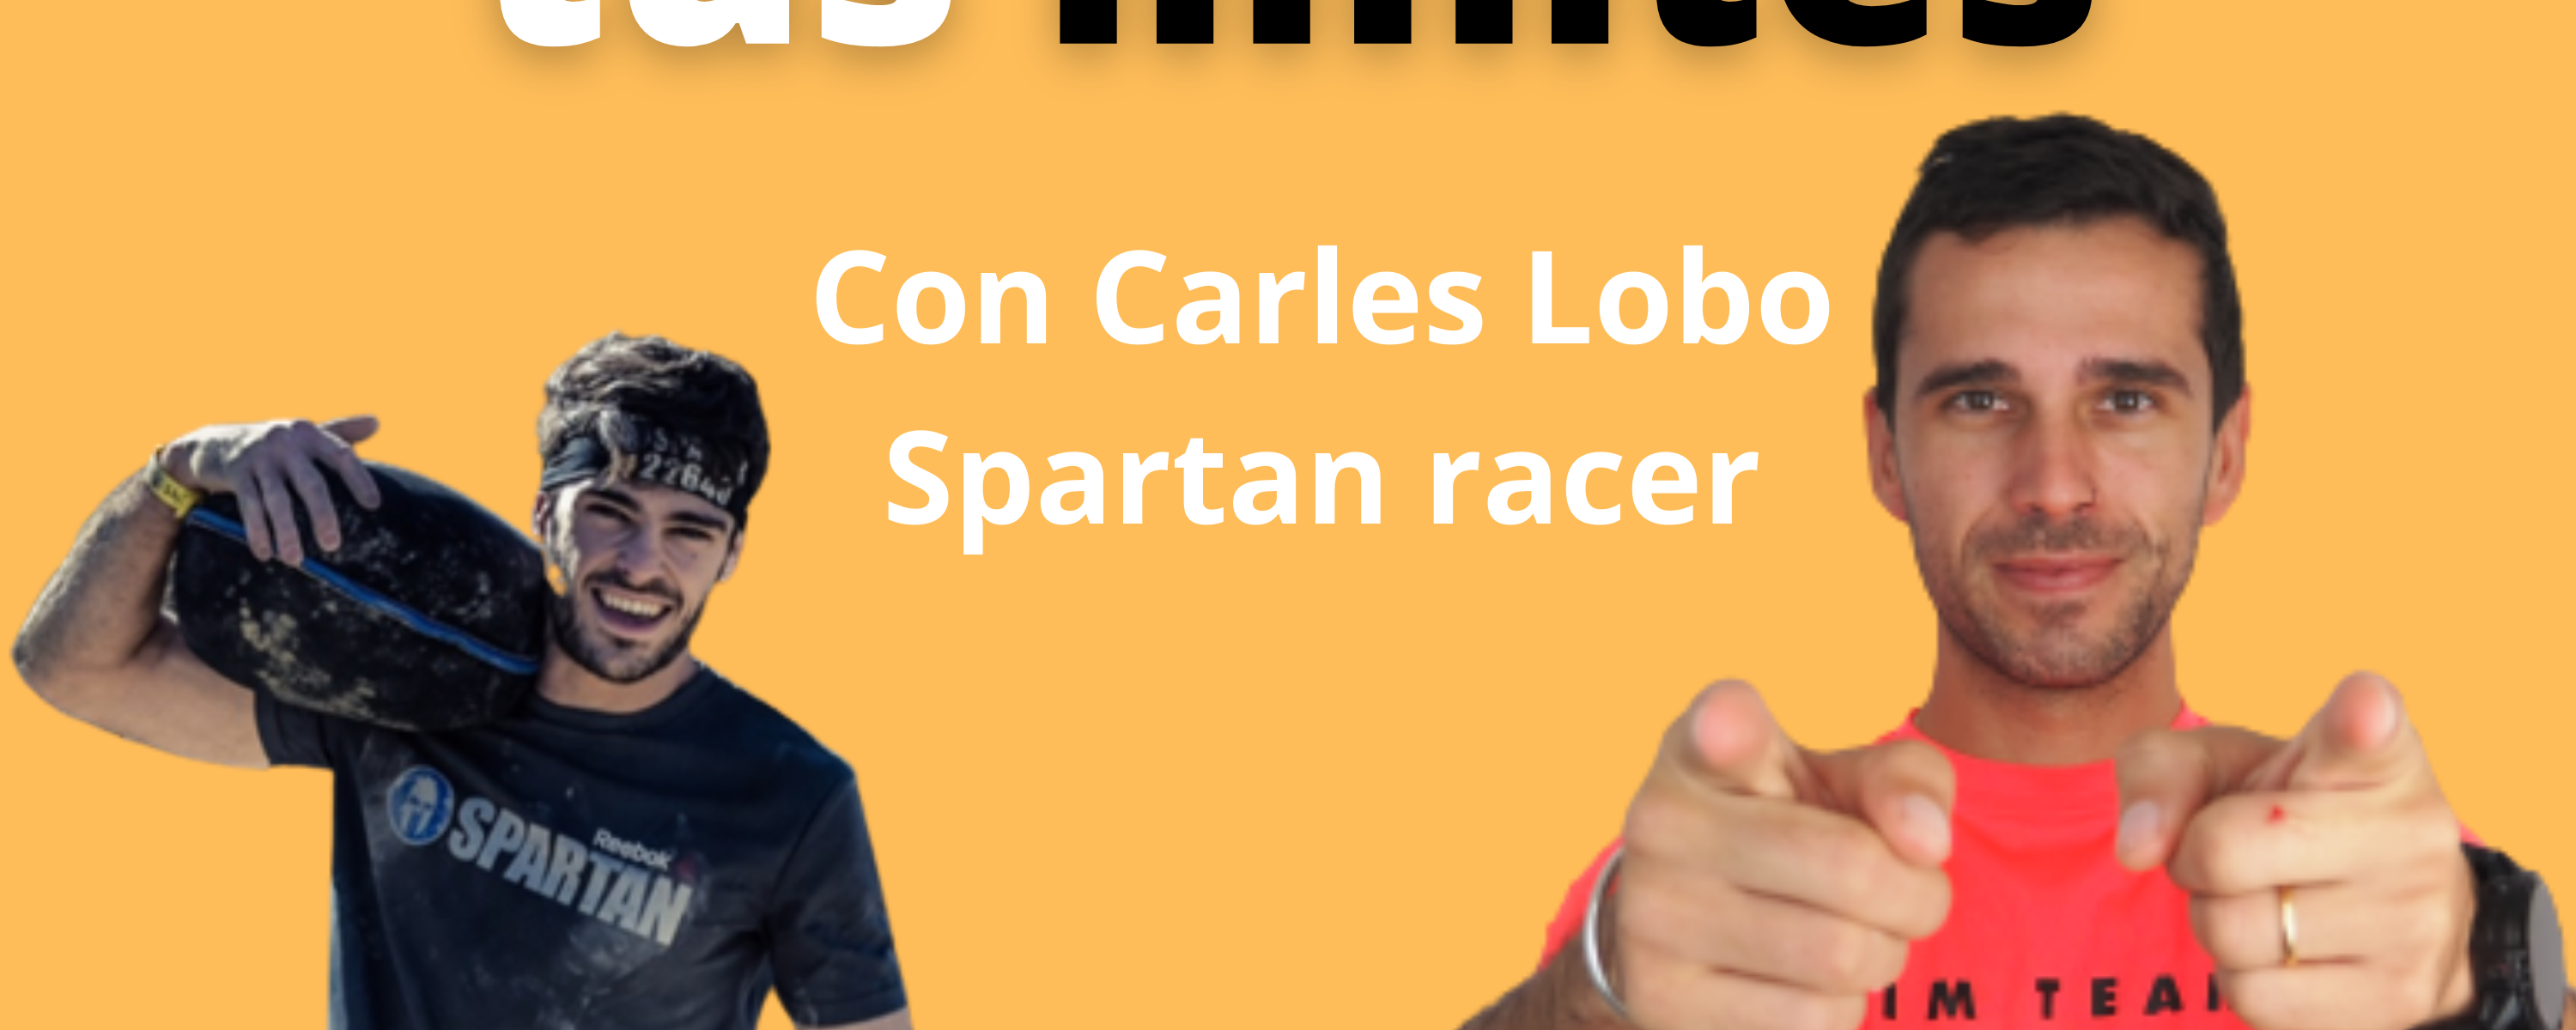 Desafiando tus límites como espartano con Carles Lobo. Spartan Race